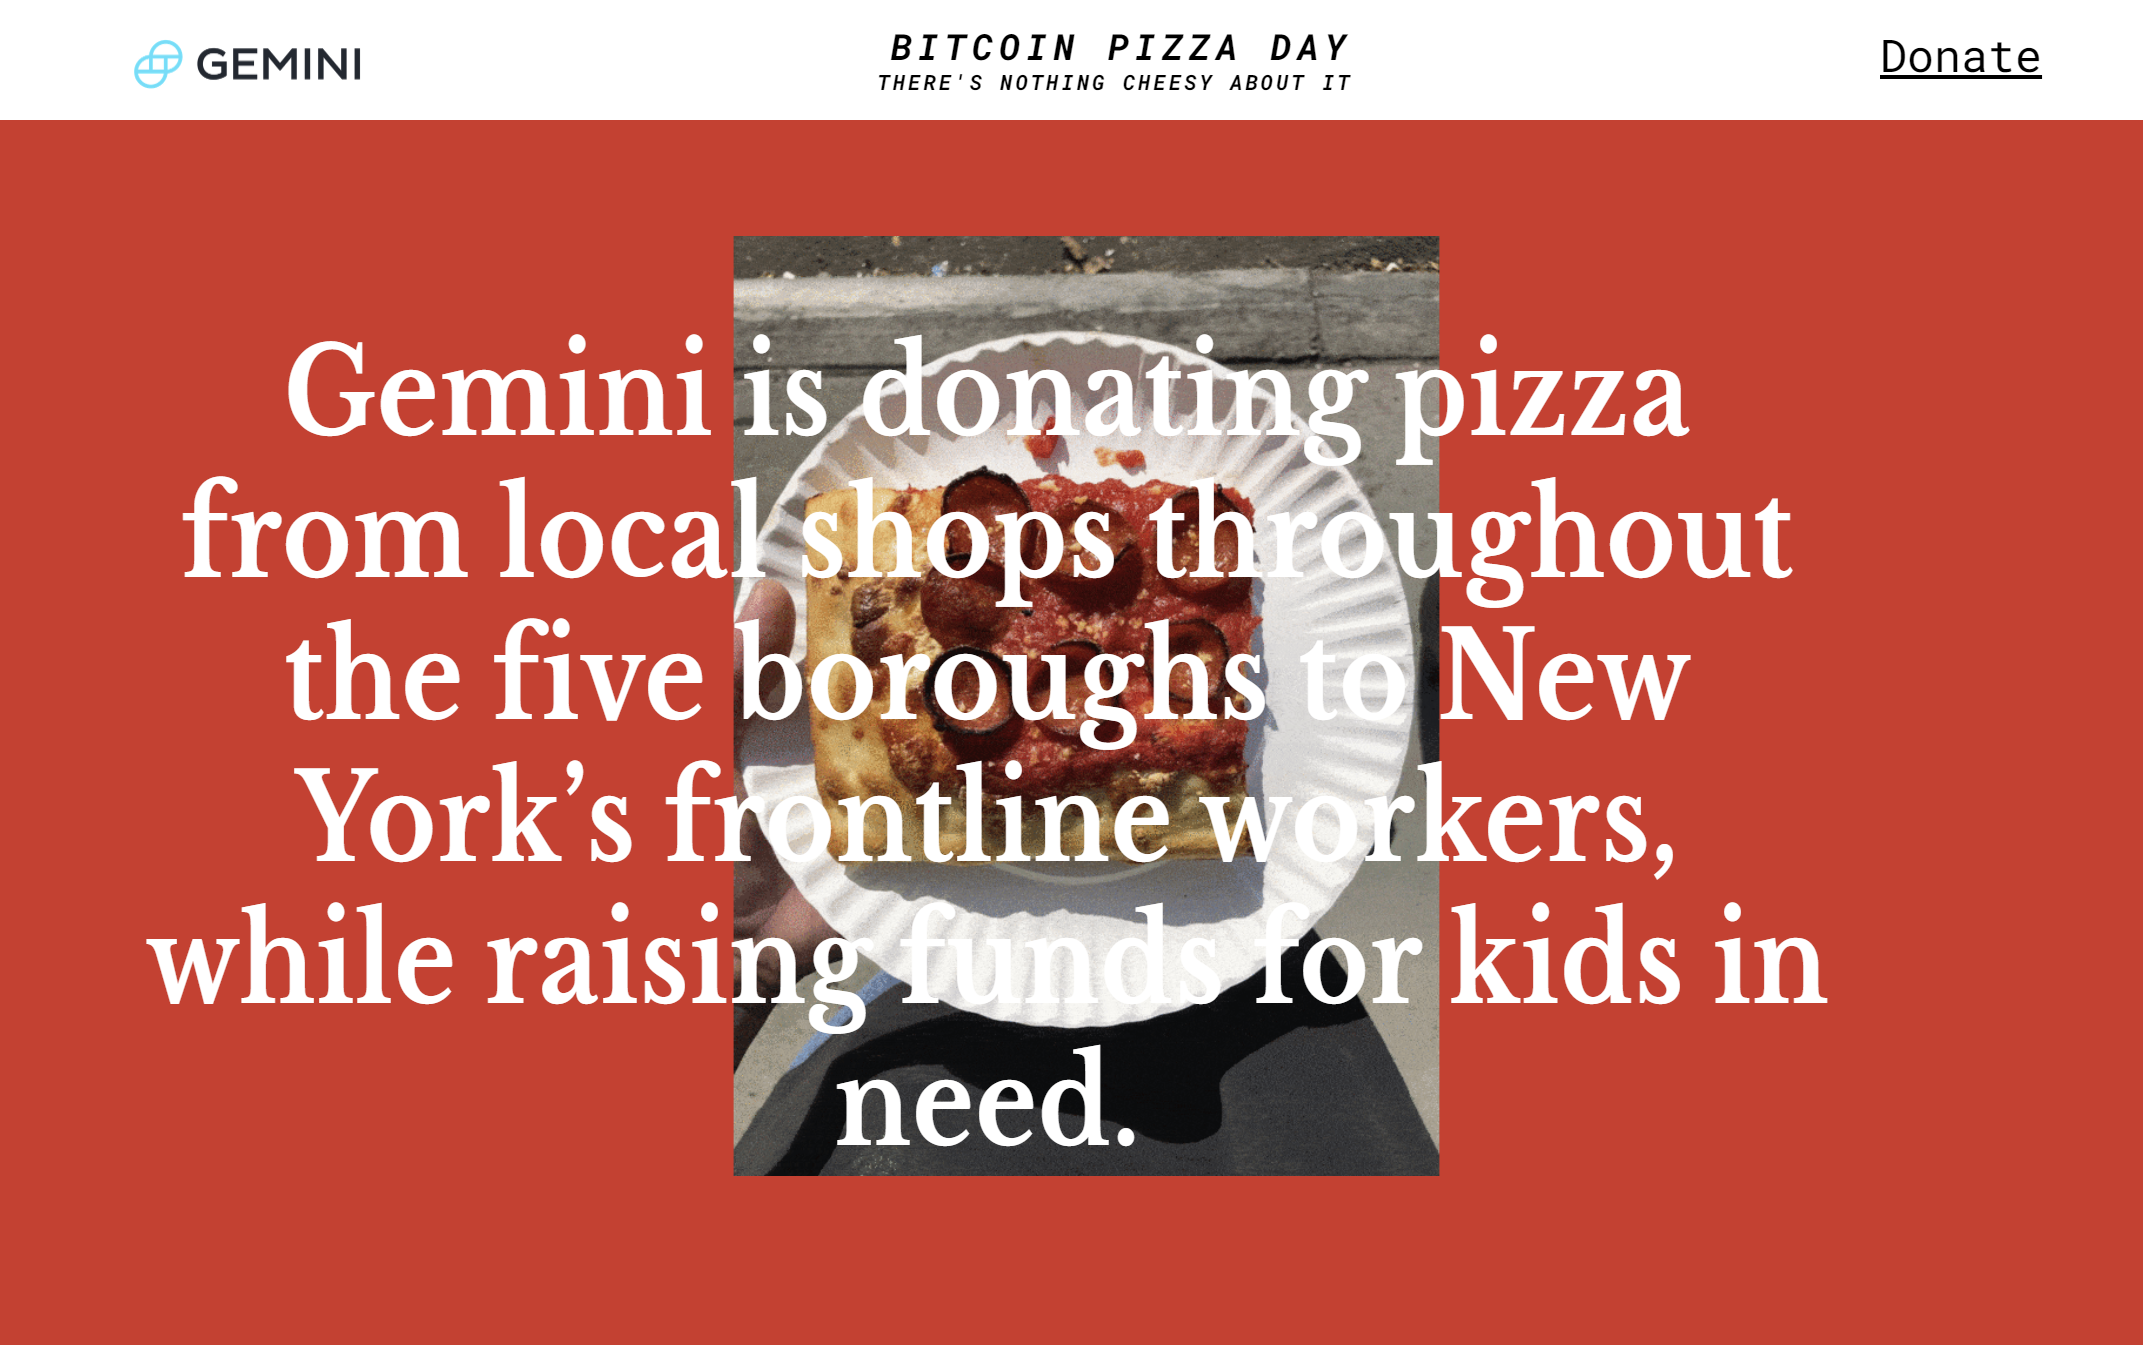 Case Study: Gemini Bitcoin Pizza | The Giving Block